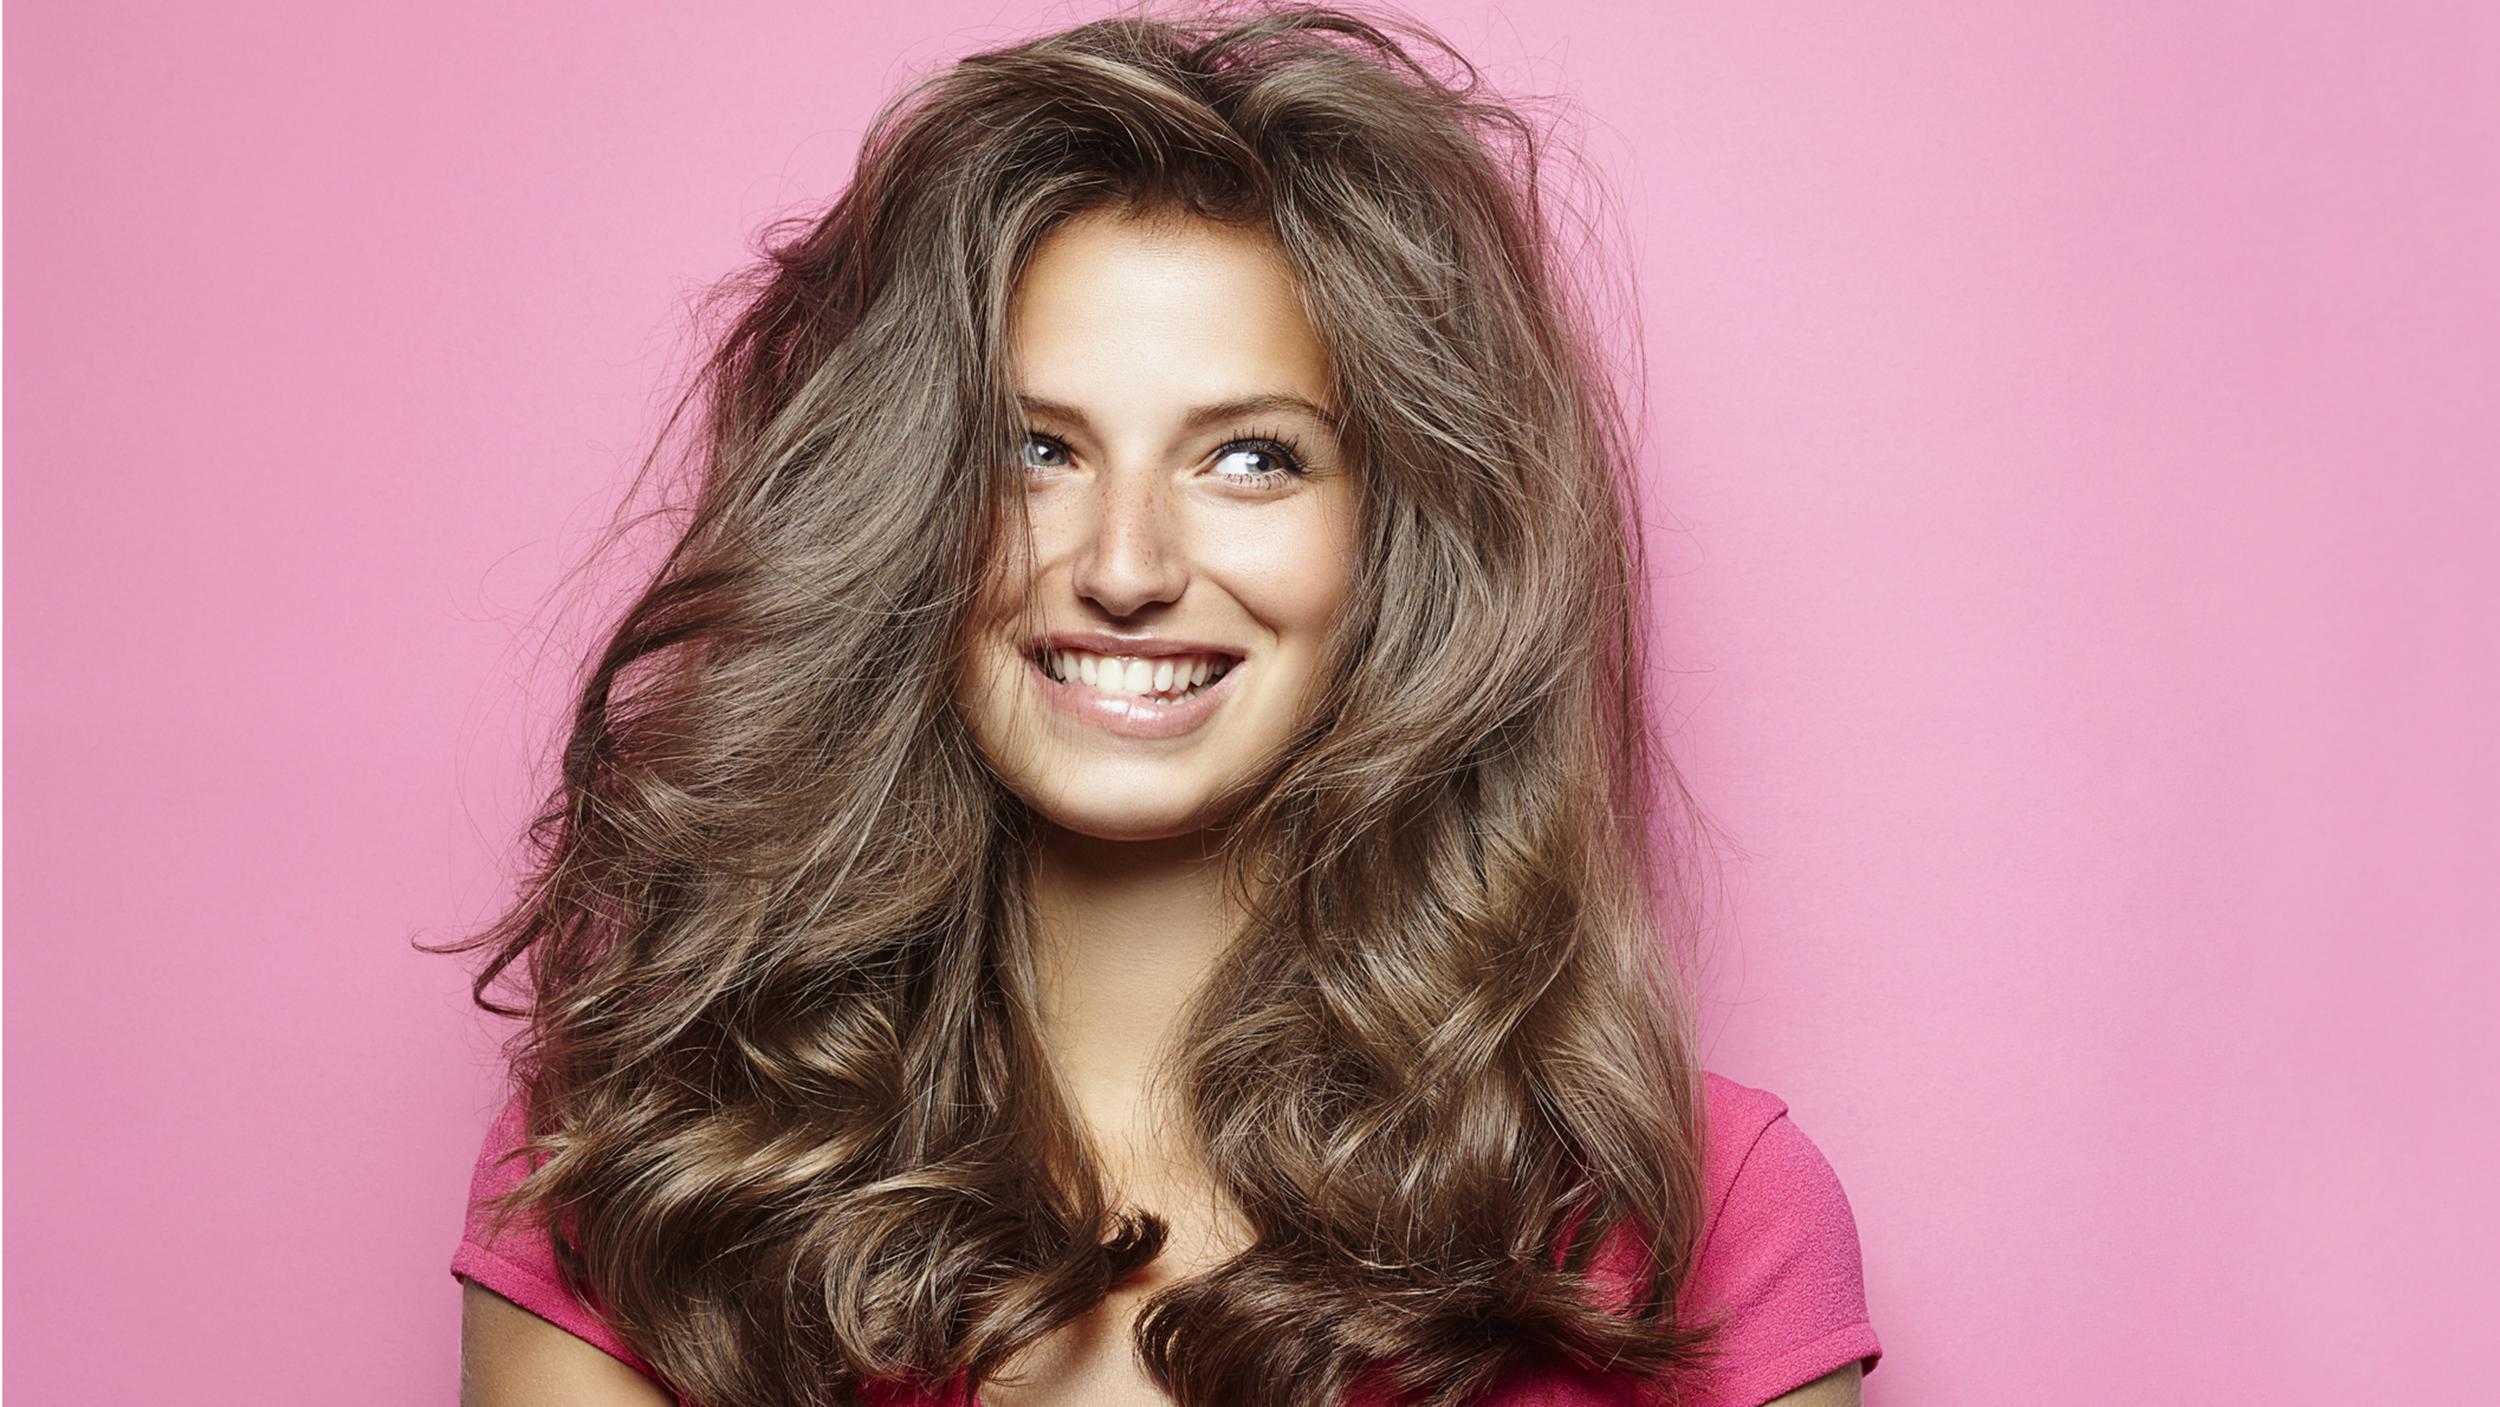 9 способов сделать волосы шелковистыми и блестящими